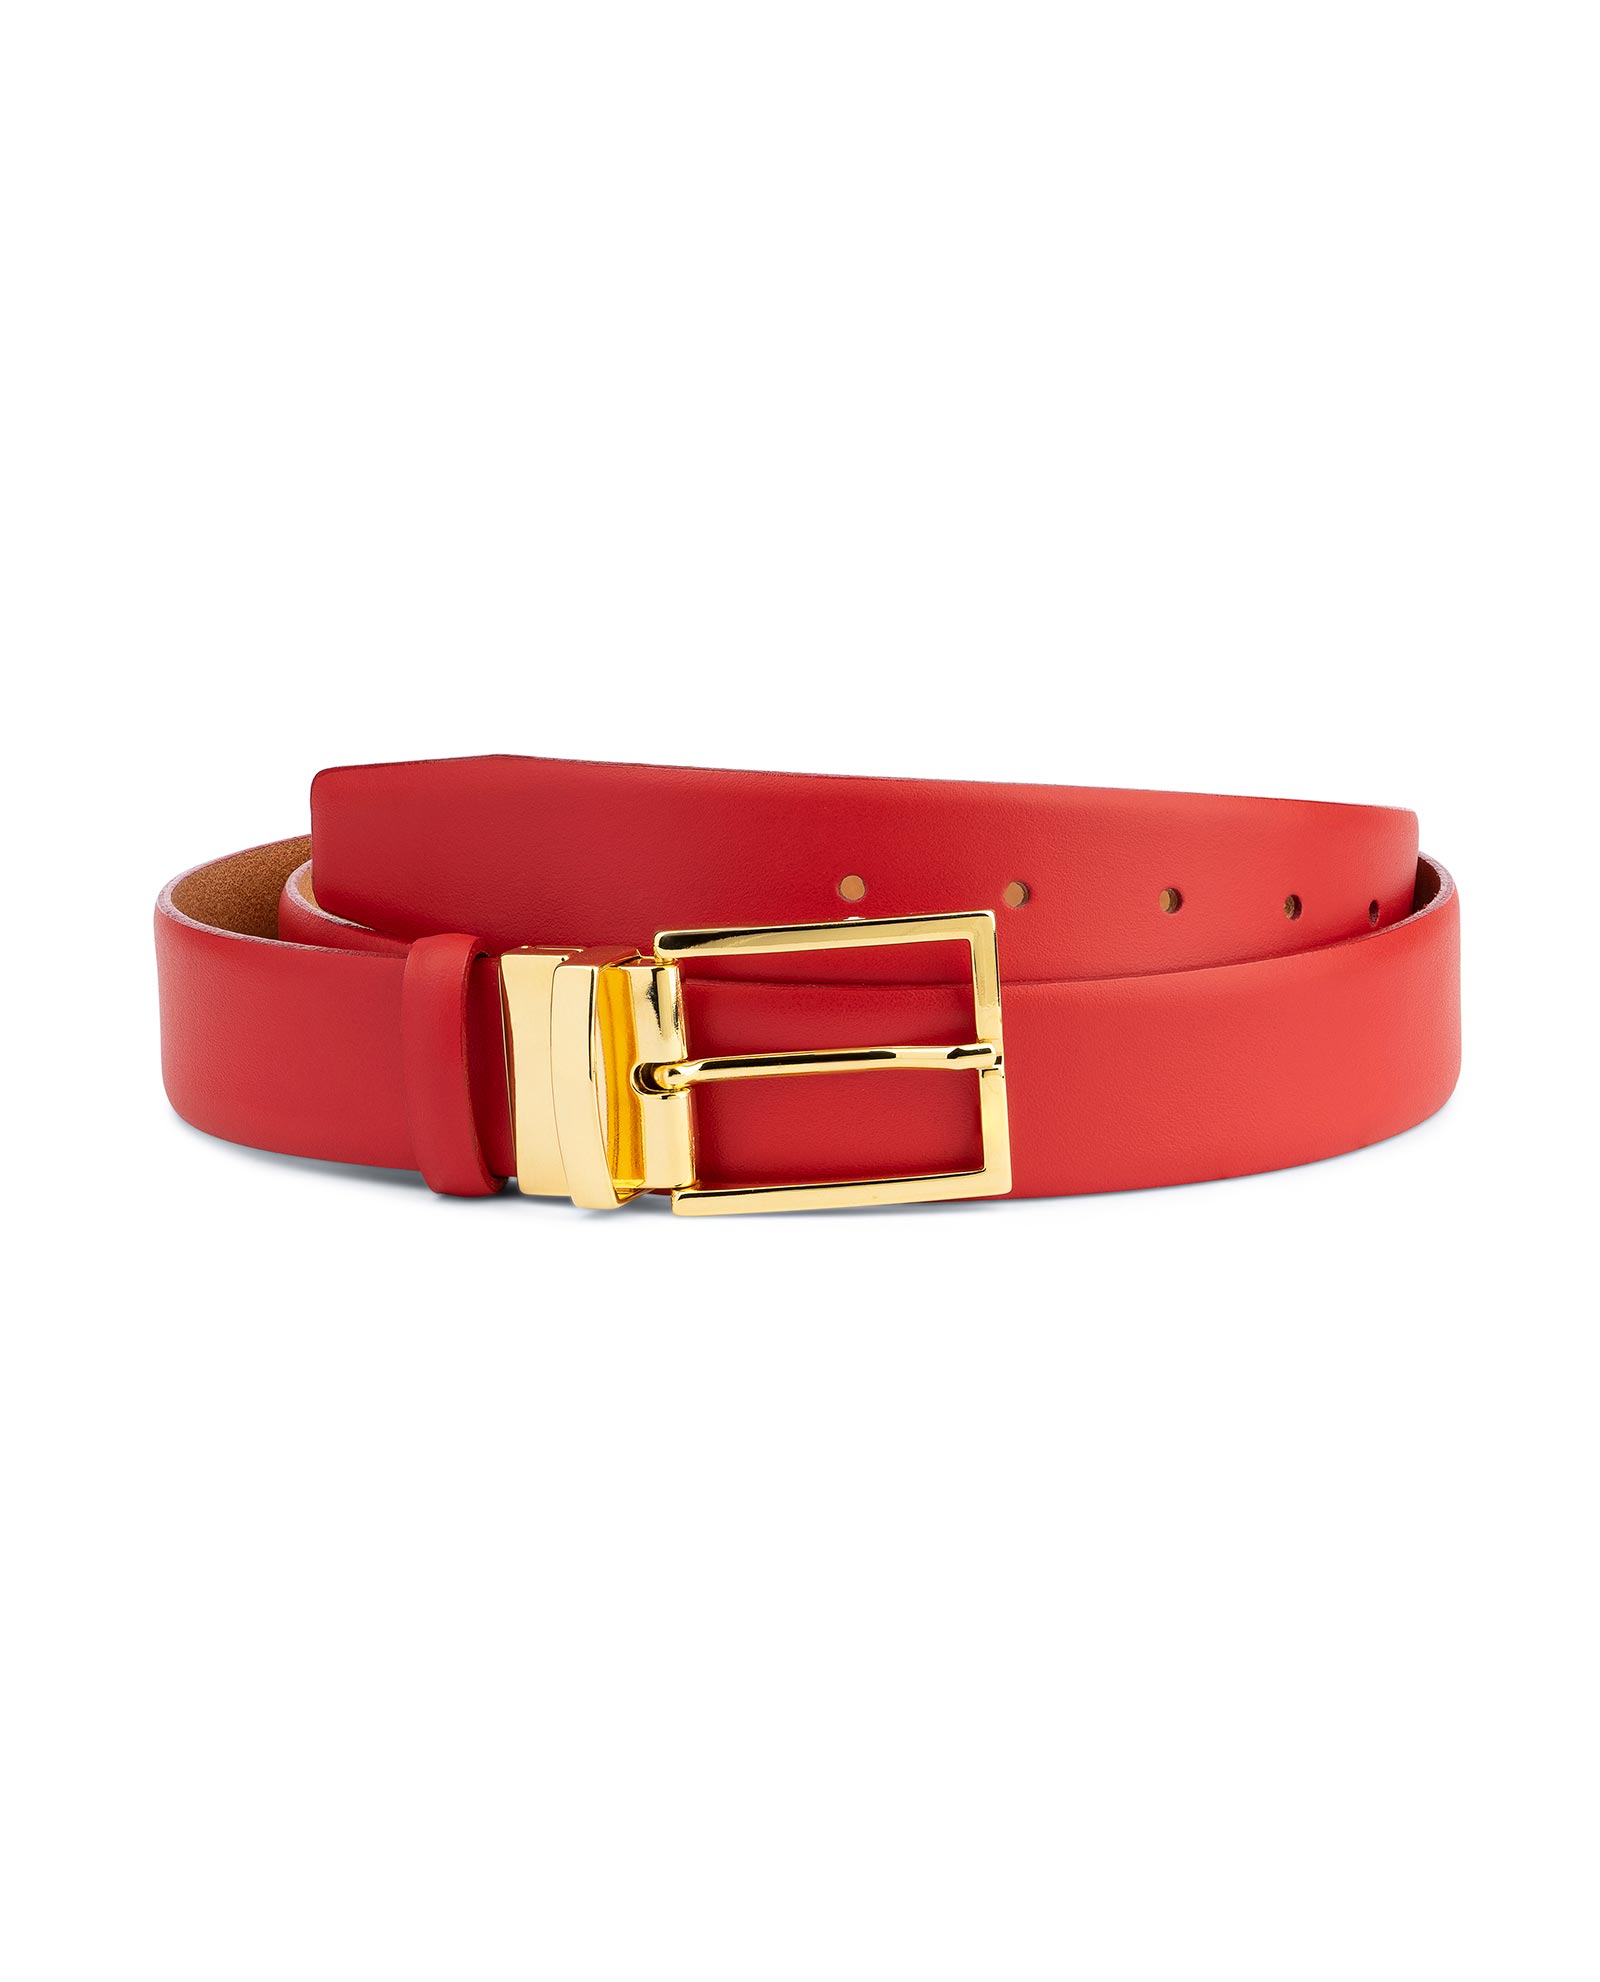 Buy Men's Red Belt With Gold Buckle | LeatherBeltsOnline.com